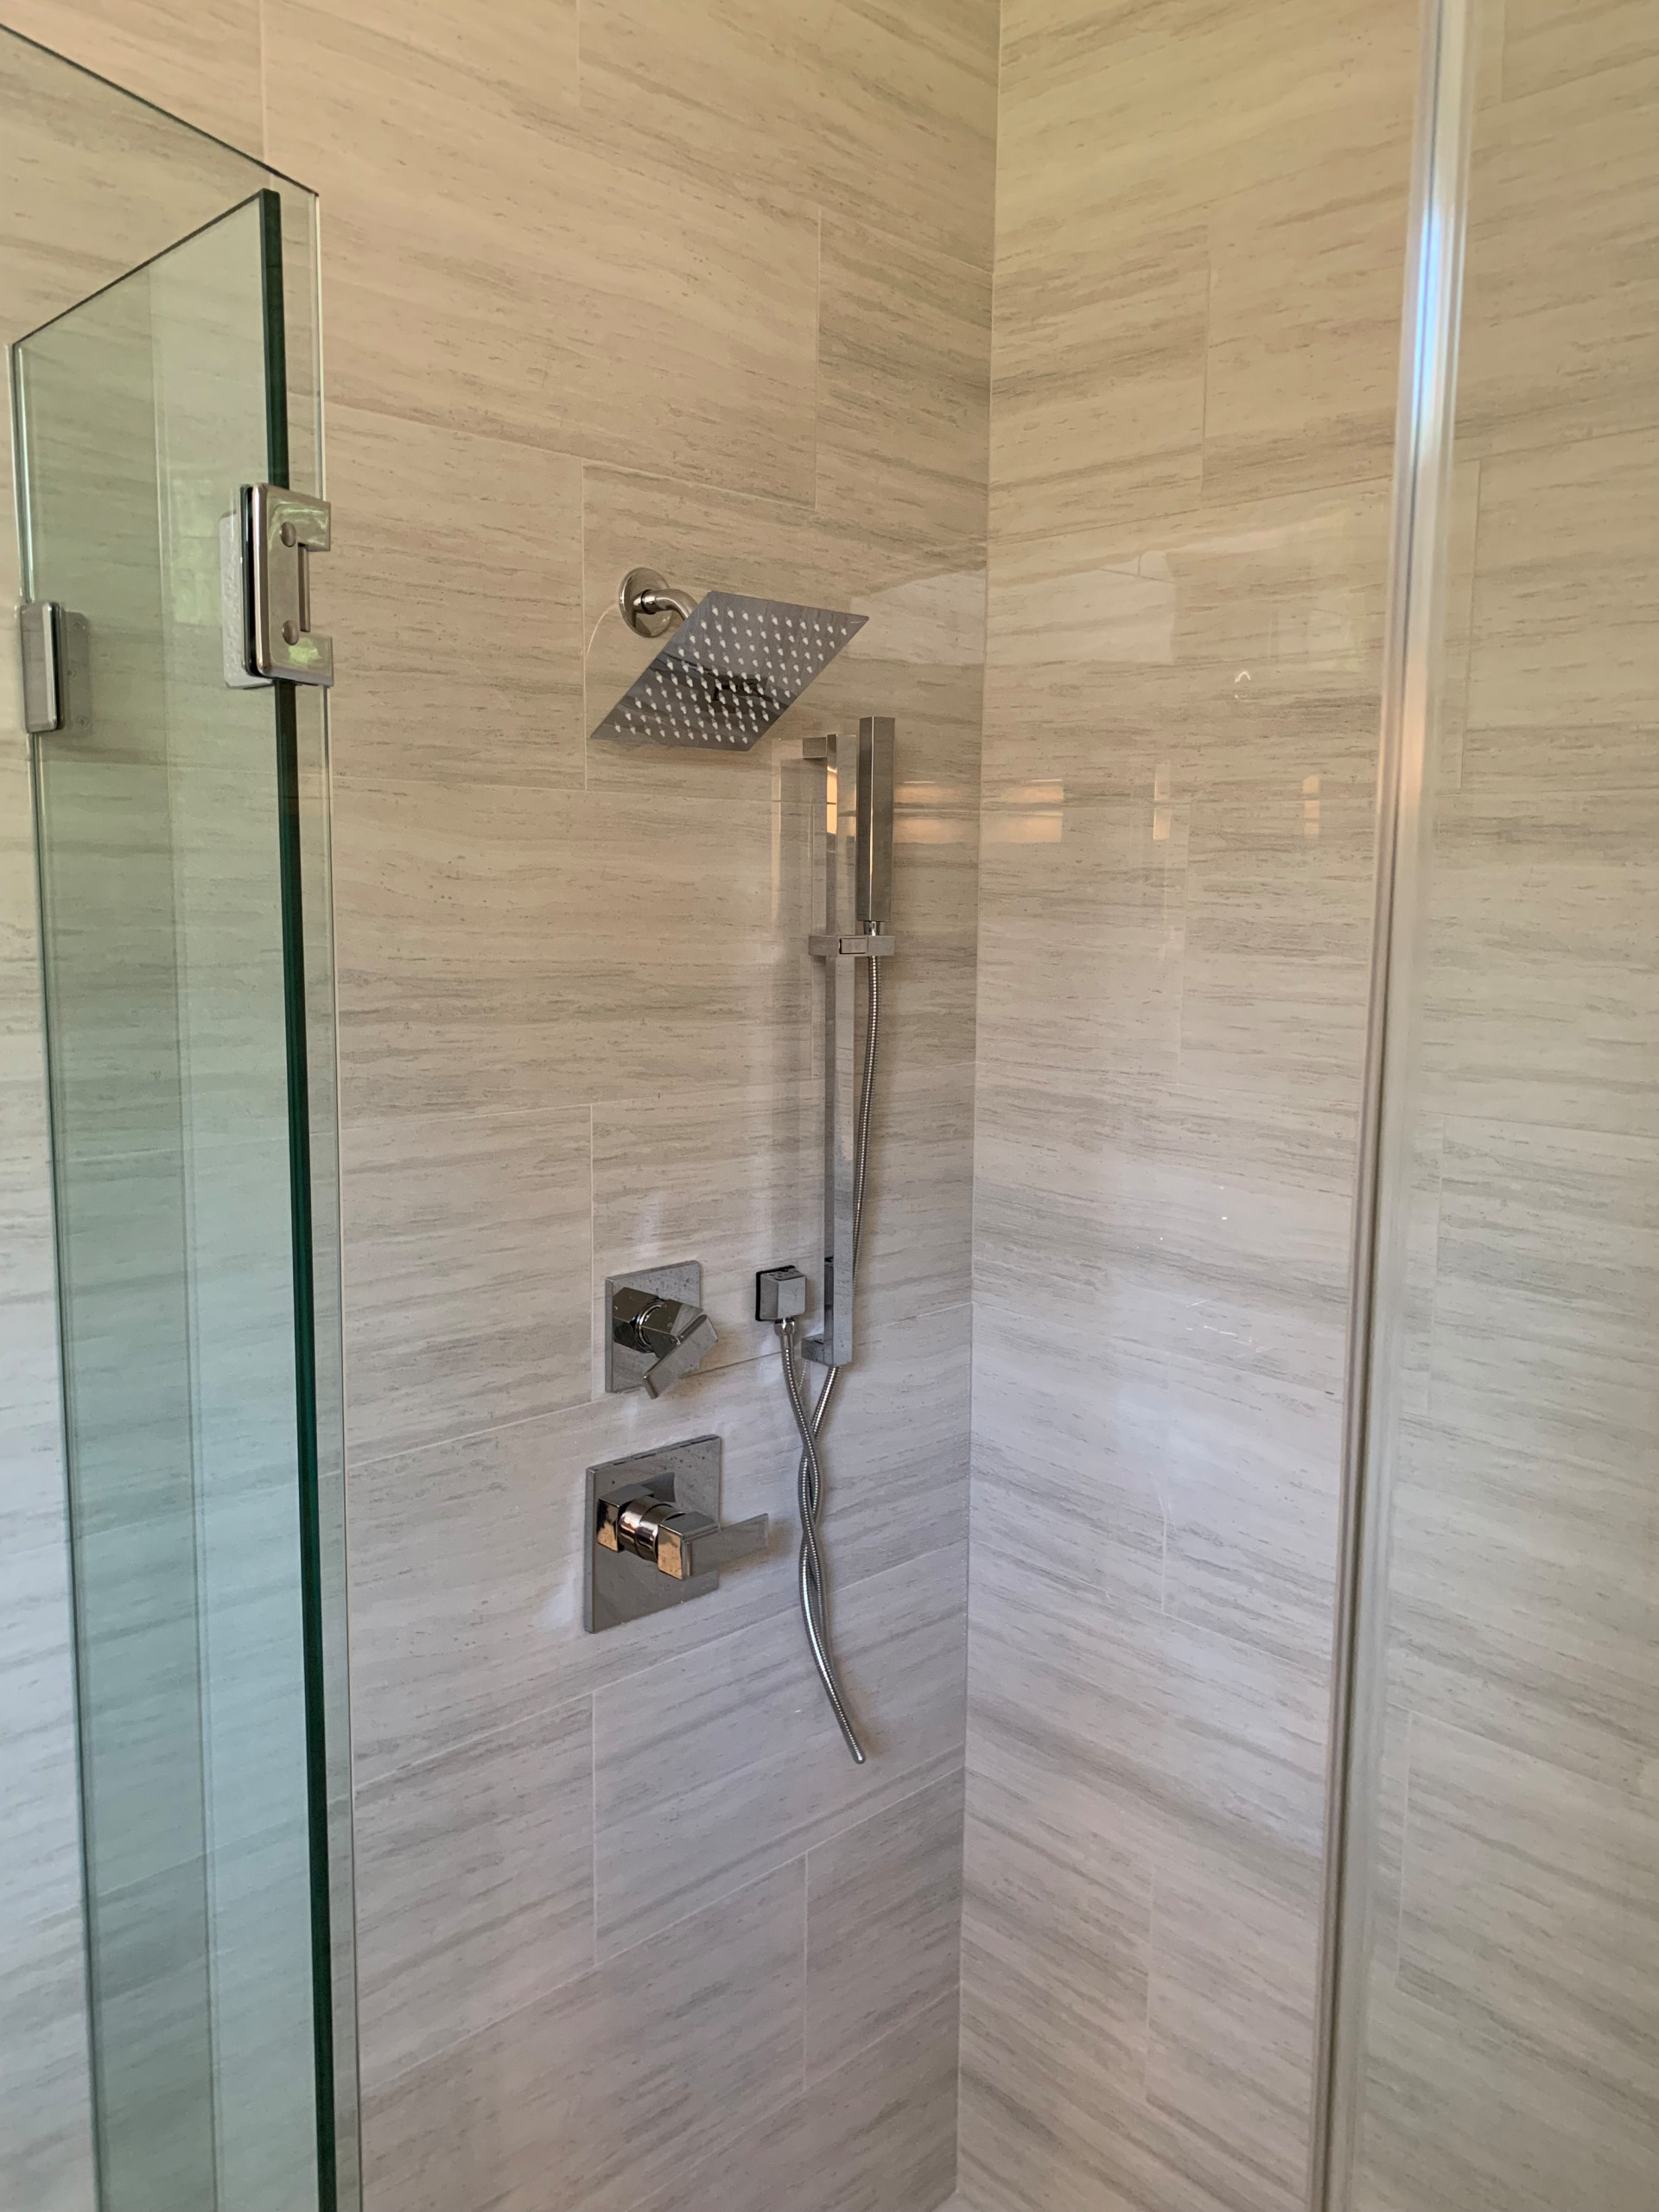 Polished 12x24 Shower Tile, 1/2" Custom Glass Shower Enclosure